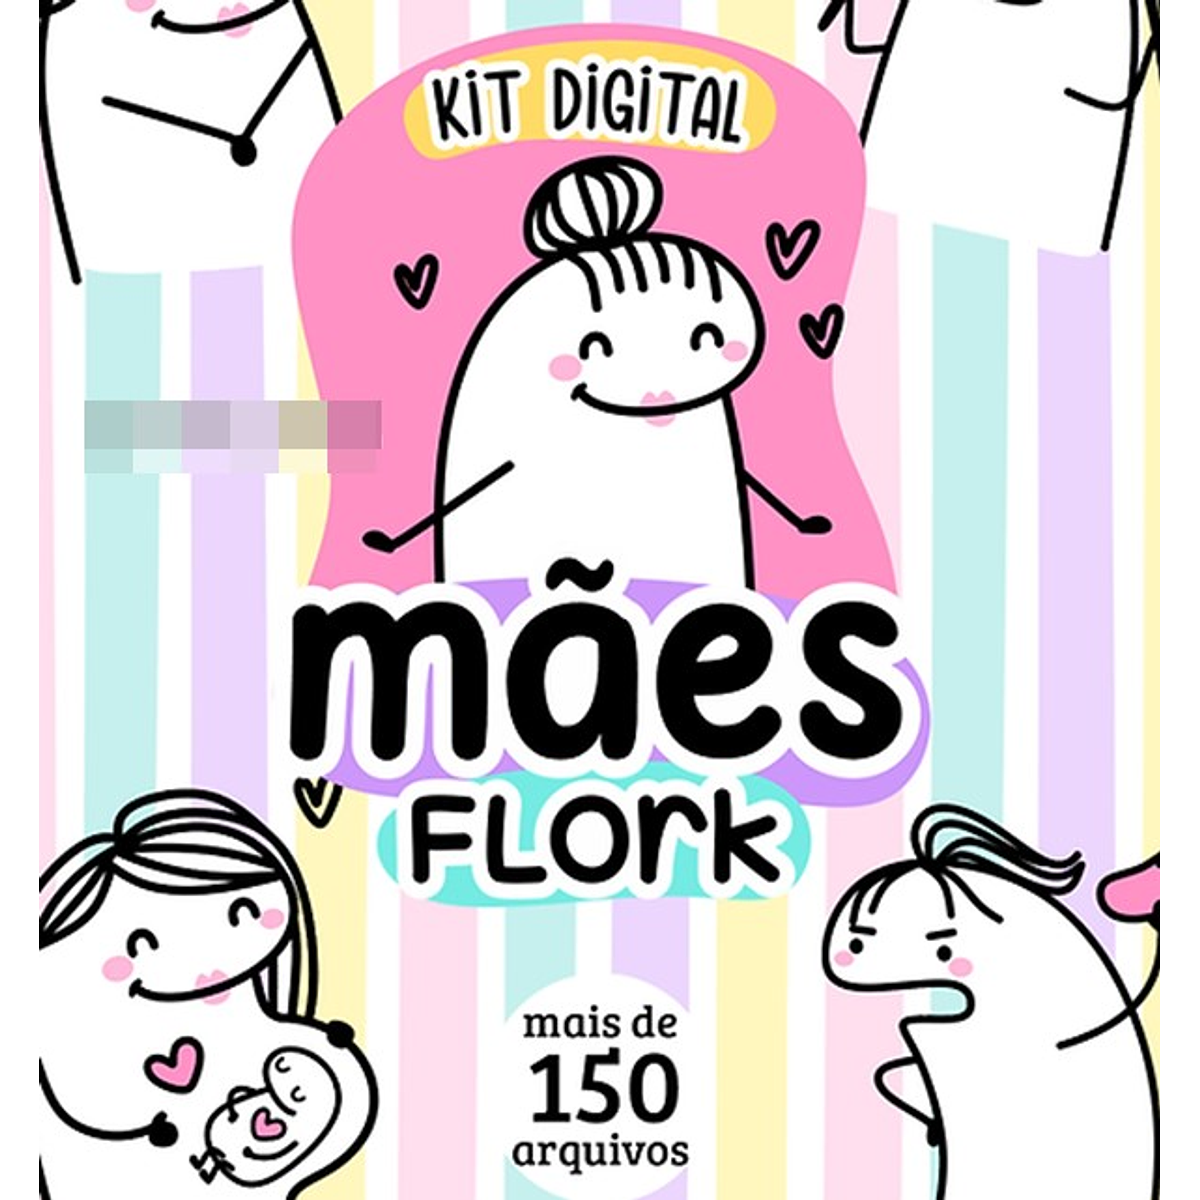 Kit Digital Flork Bento Memes Letrinhas 2 sem fundo Arqui